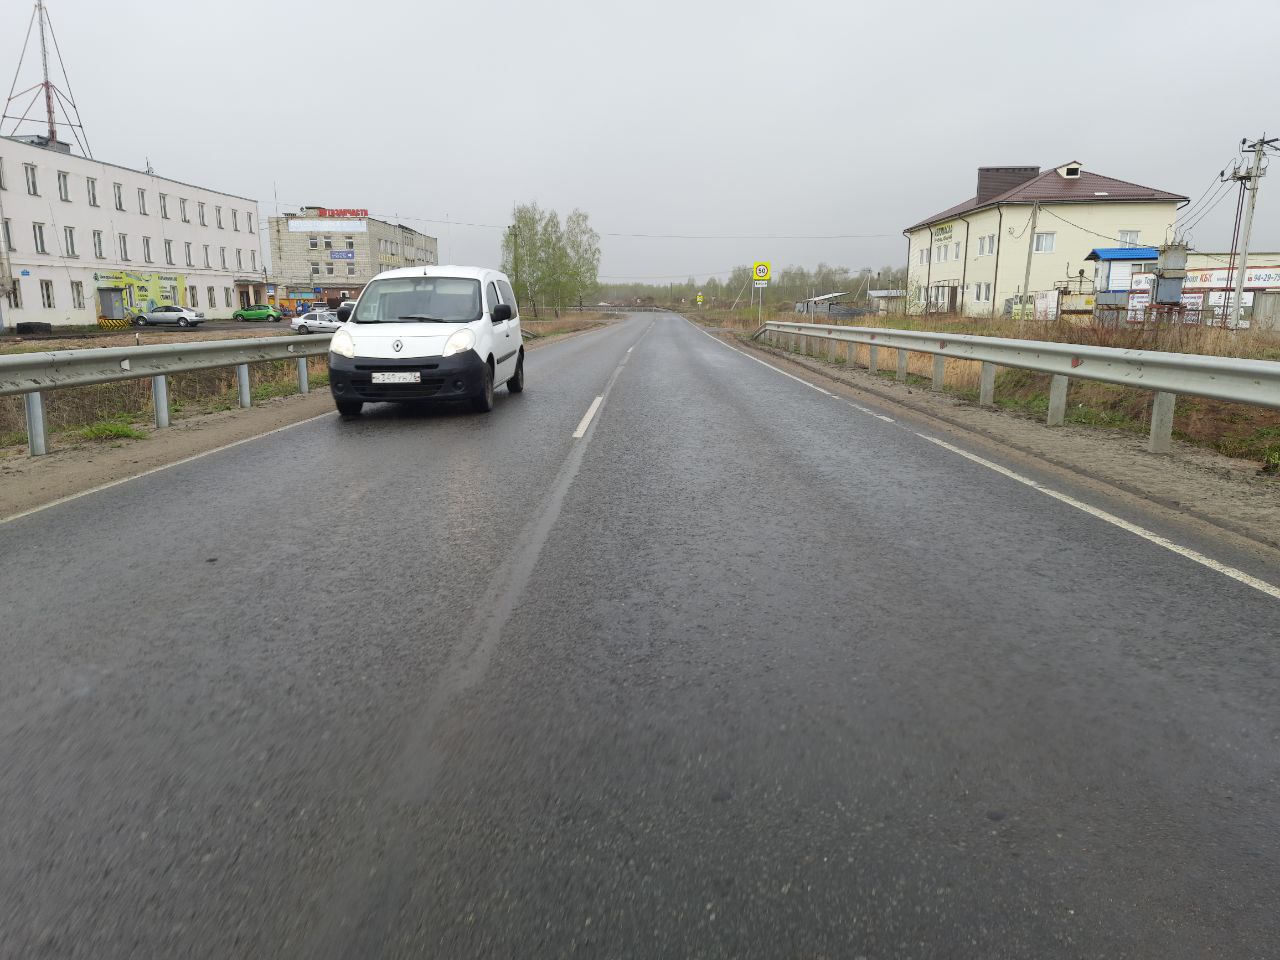 Недостатки на отремонтированной дороге на Перекопе в Ярославле устранят по гарантии